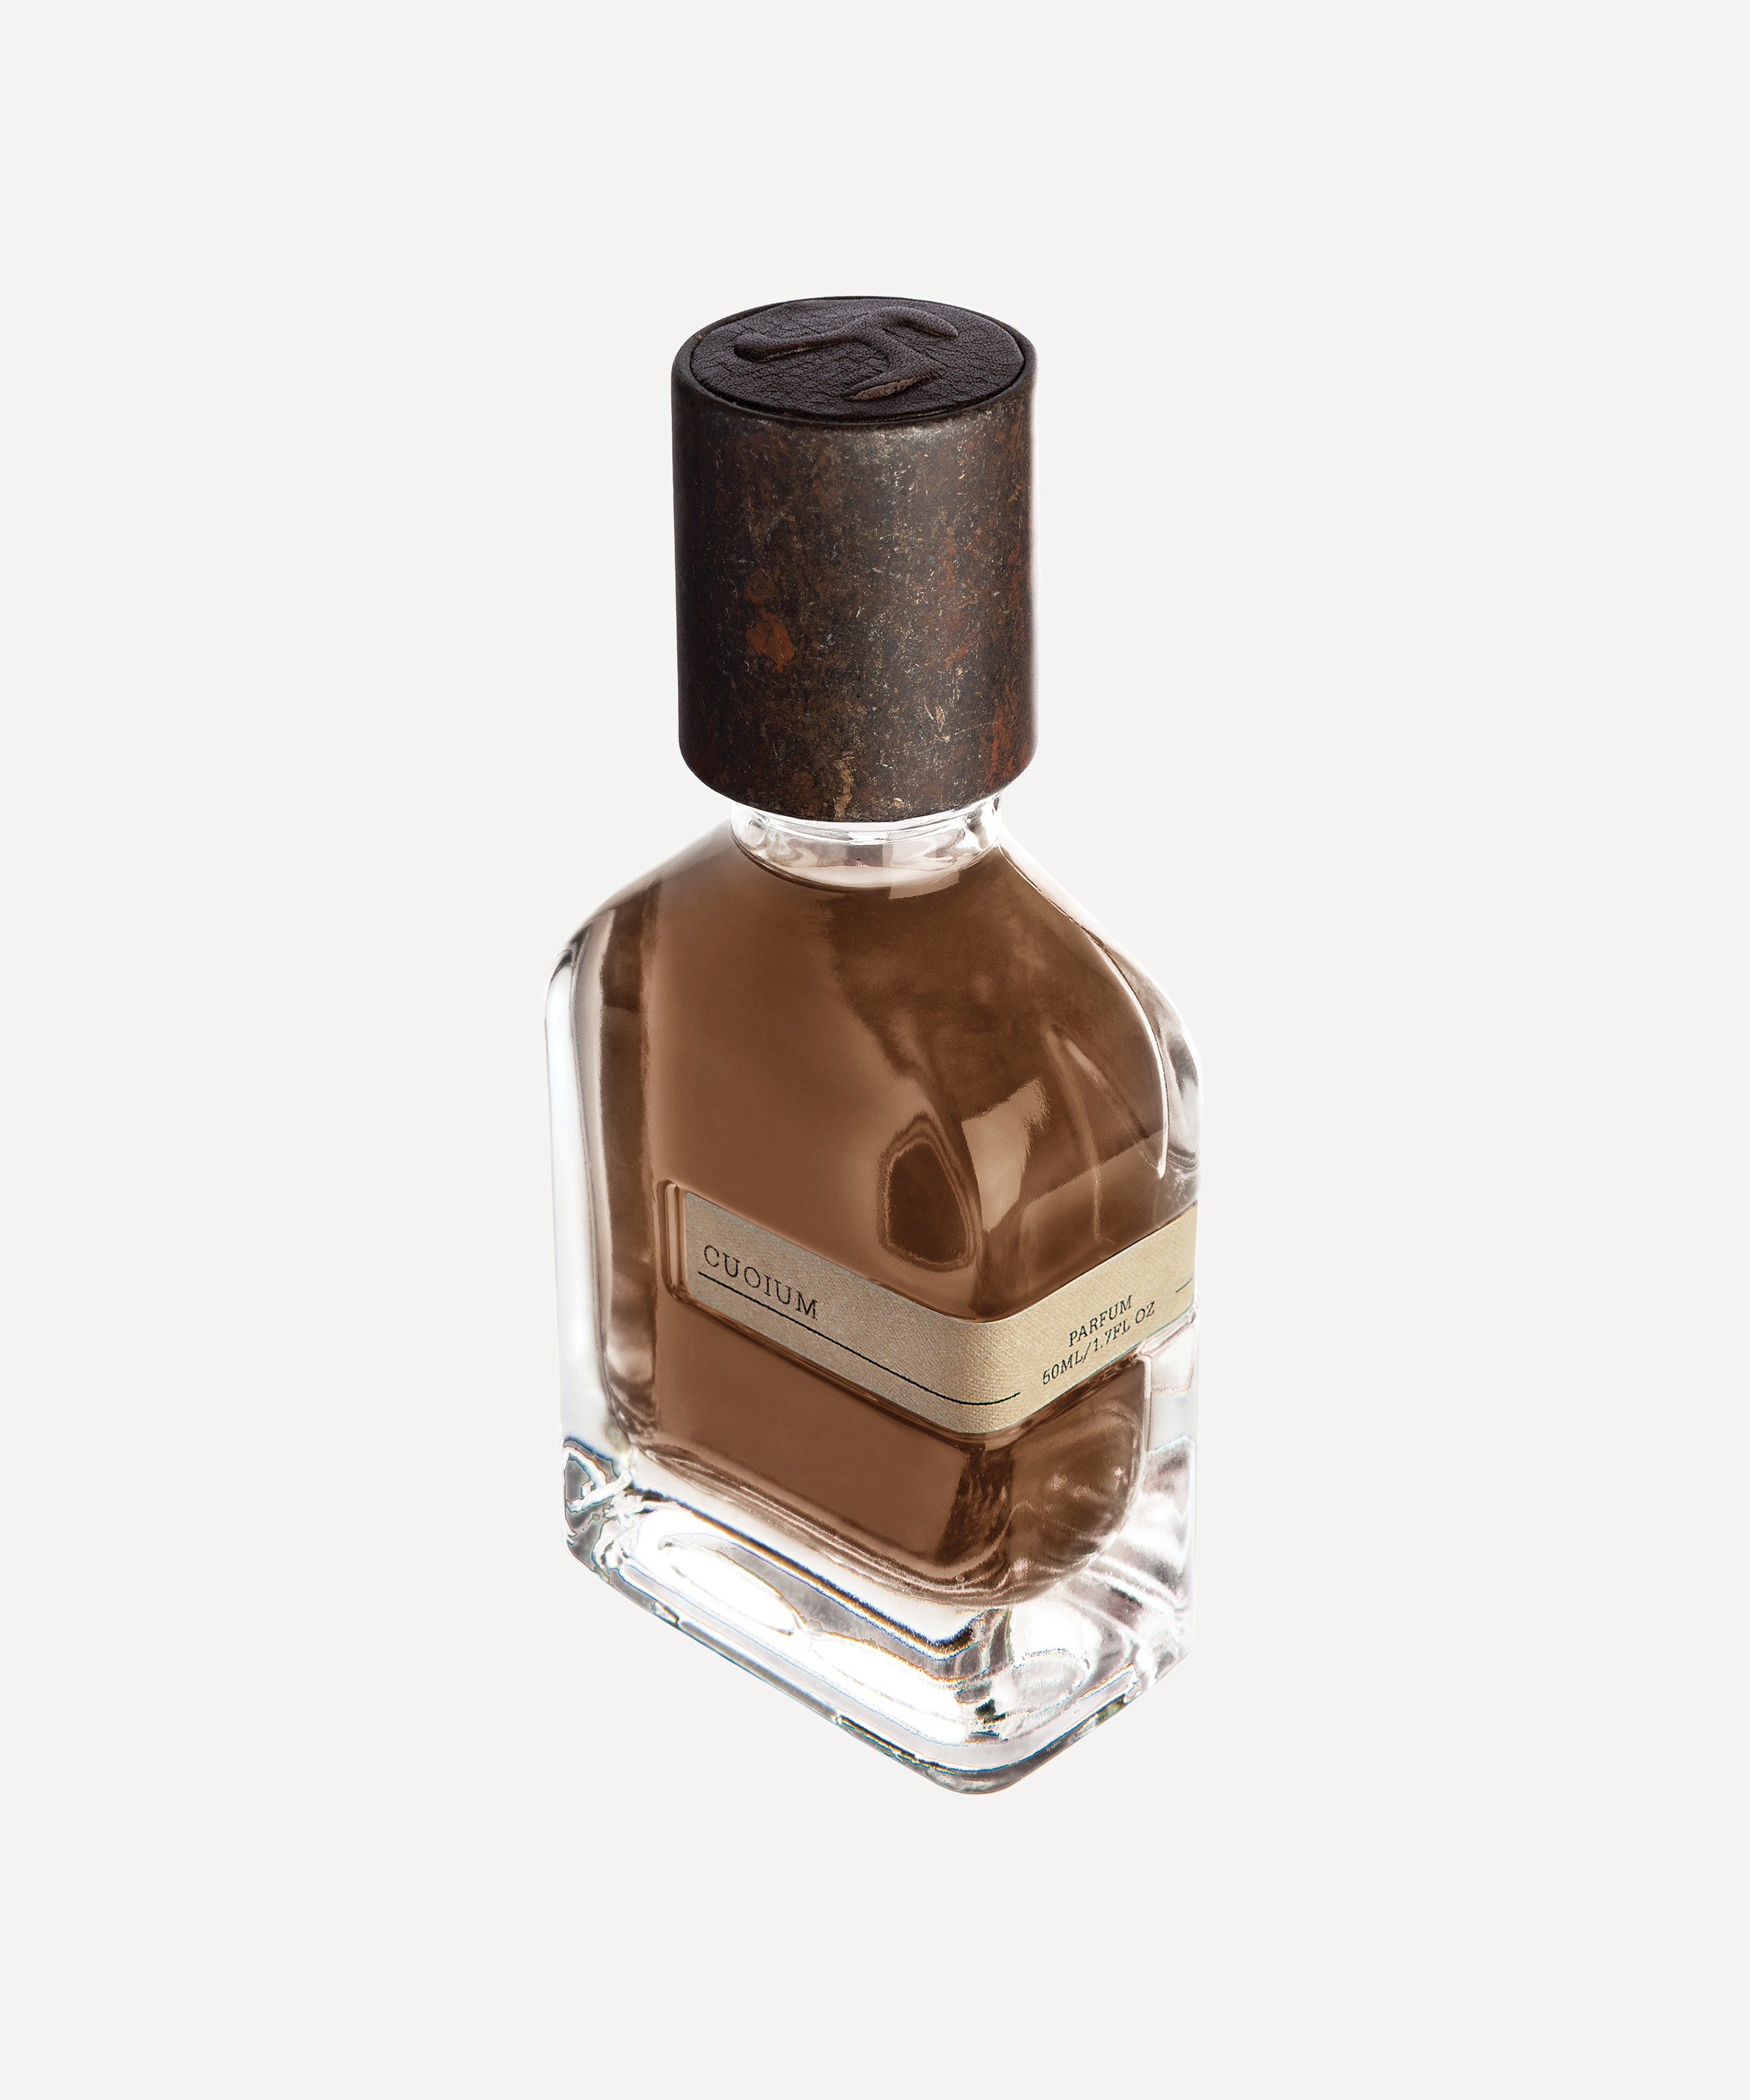 Orto Parisi - Cuoium Extrait De Parfum 50ml